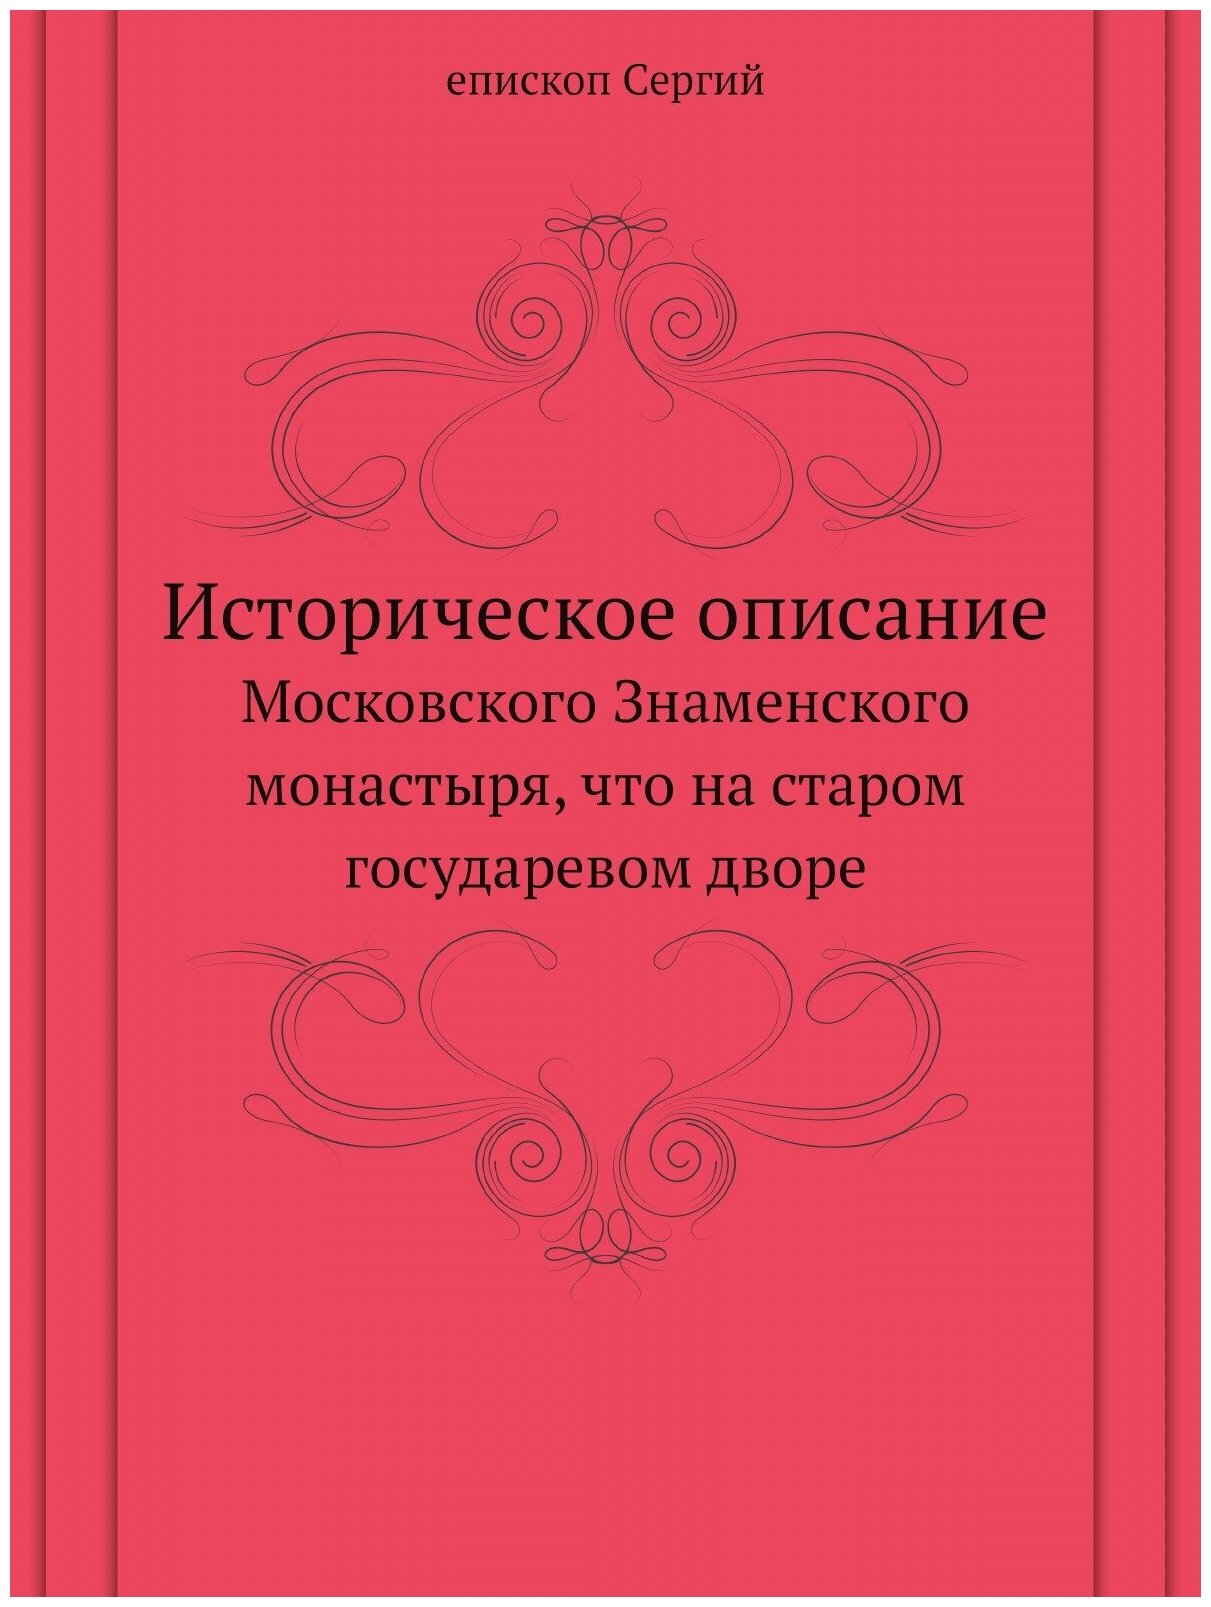 Историческое описание Московского Знаменского монастыря, что на старом государевом дворе